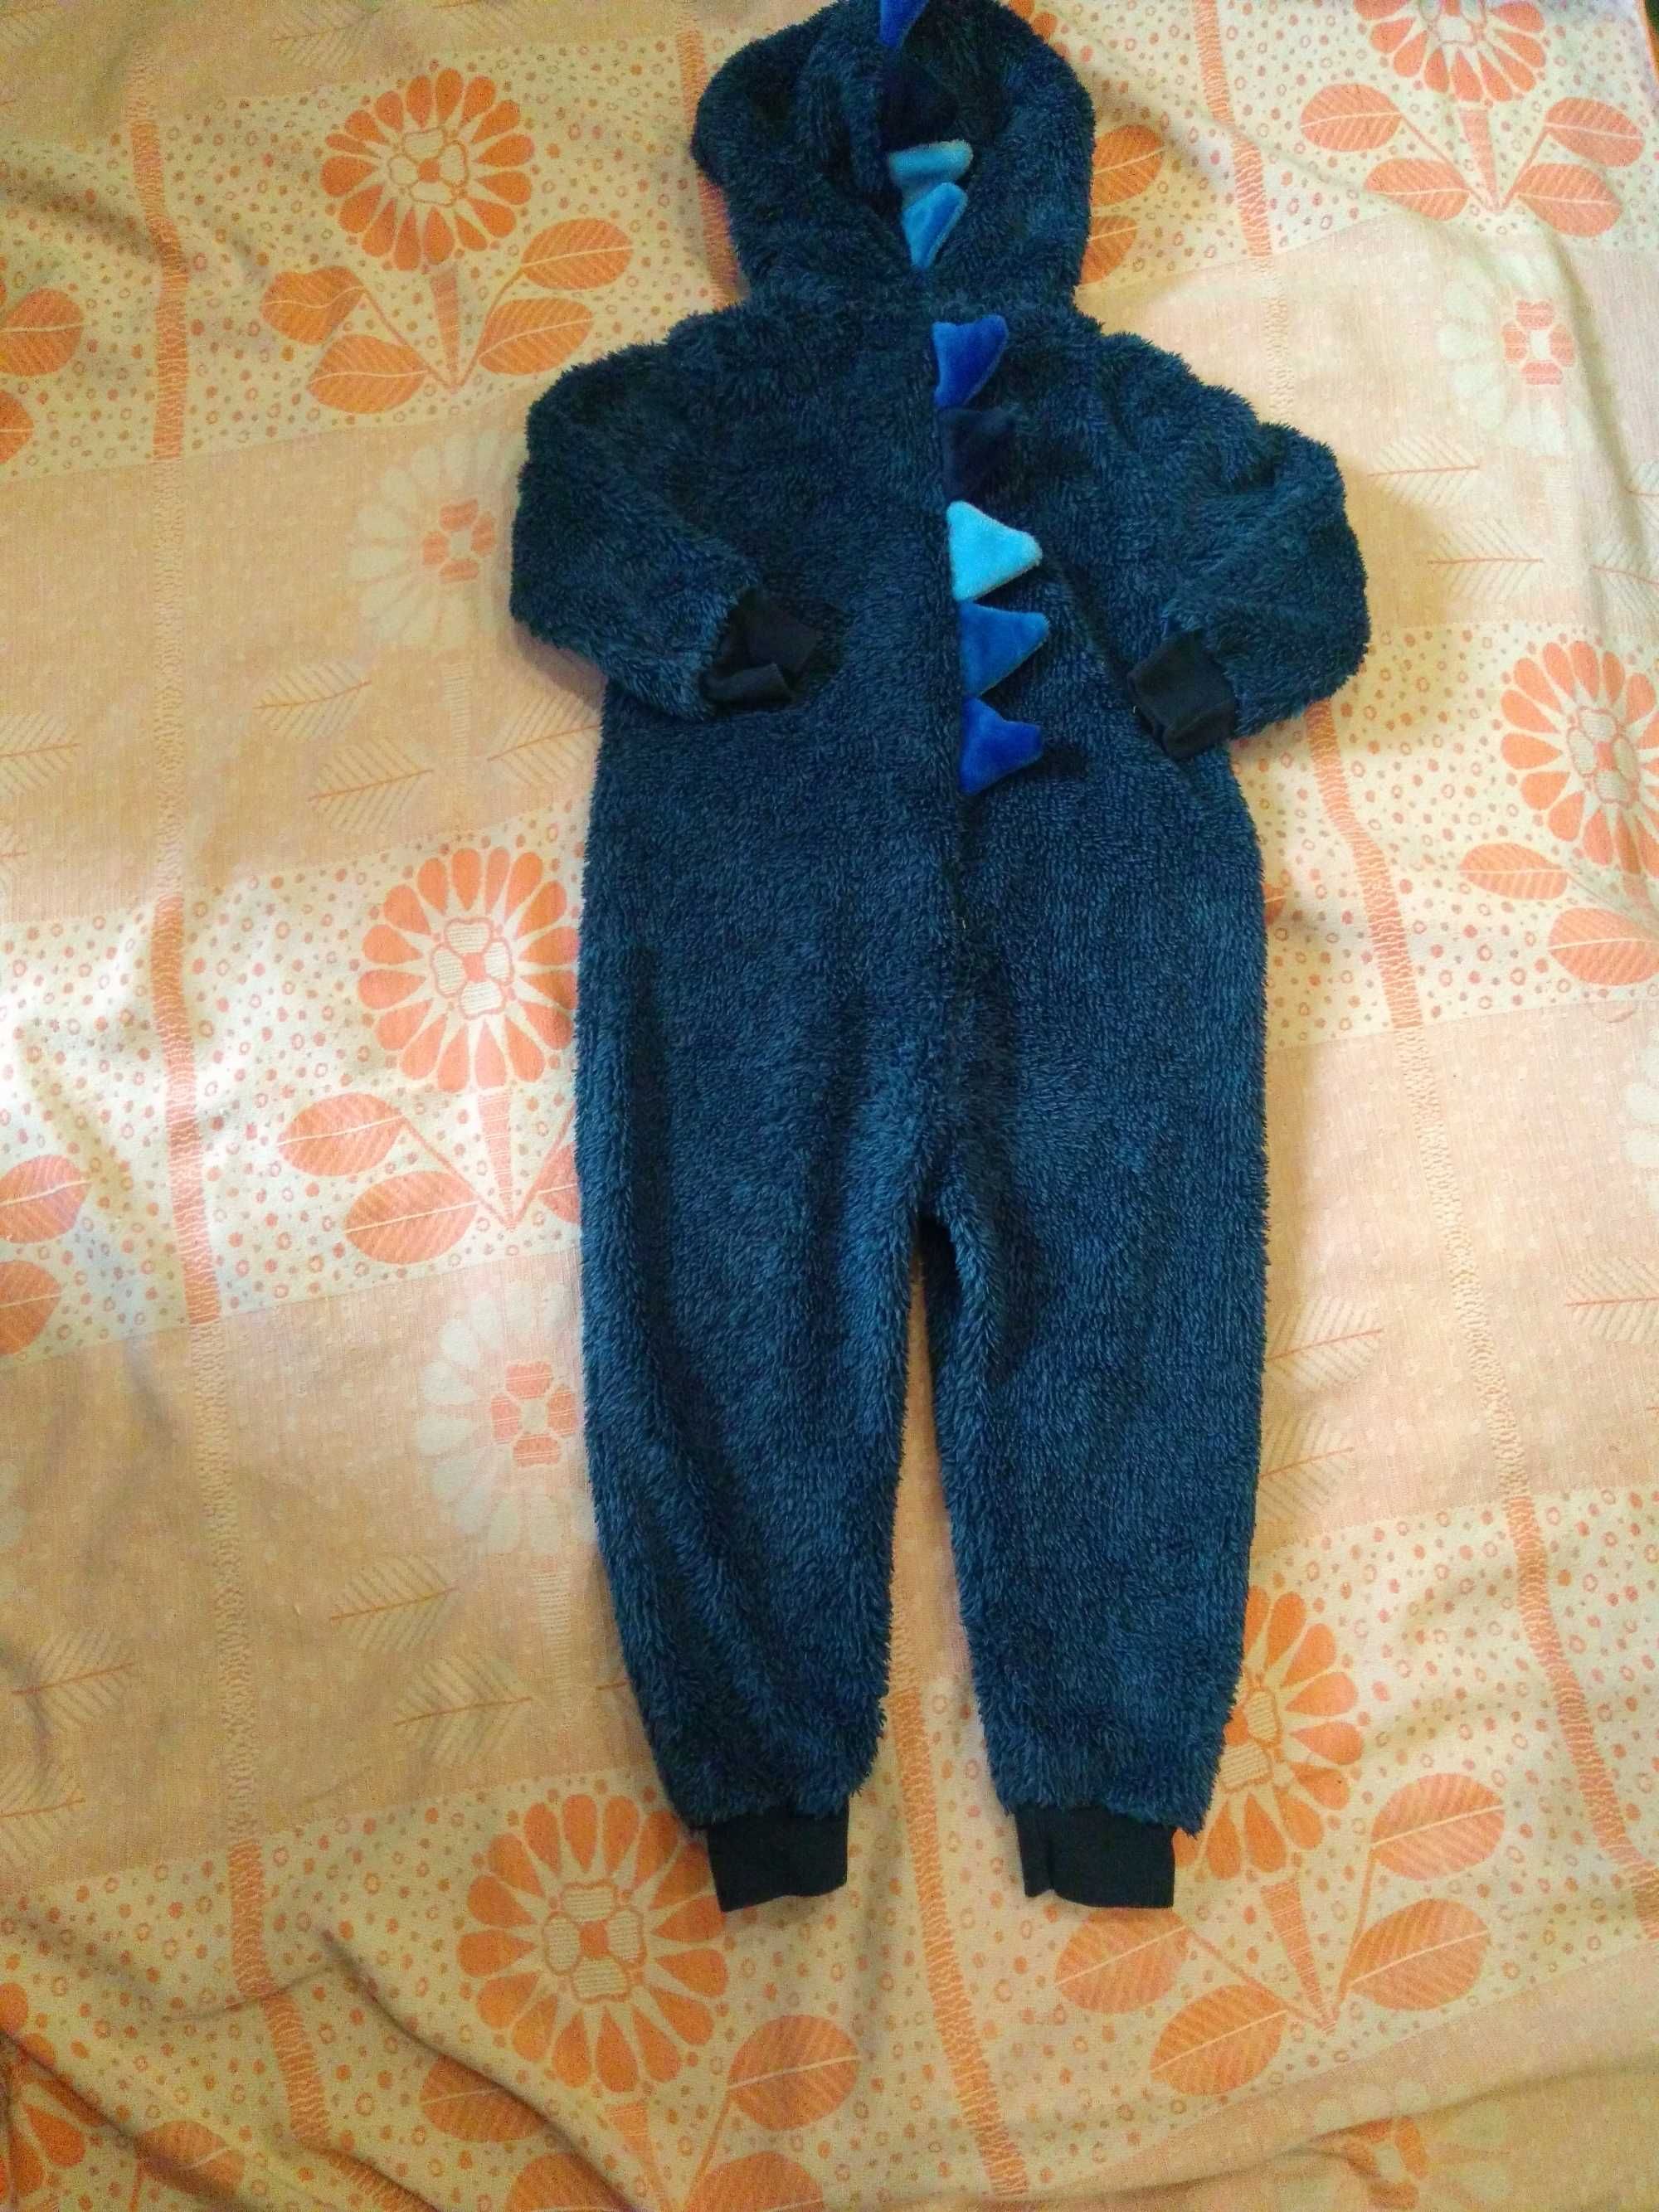 Теплая,флисовая пижамка-кигуруми на мальчика,фирма Next